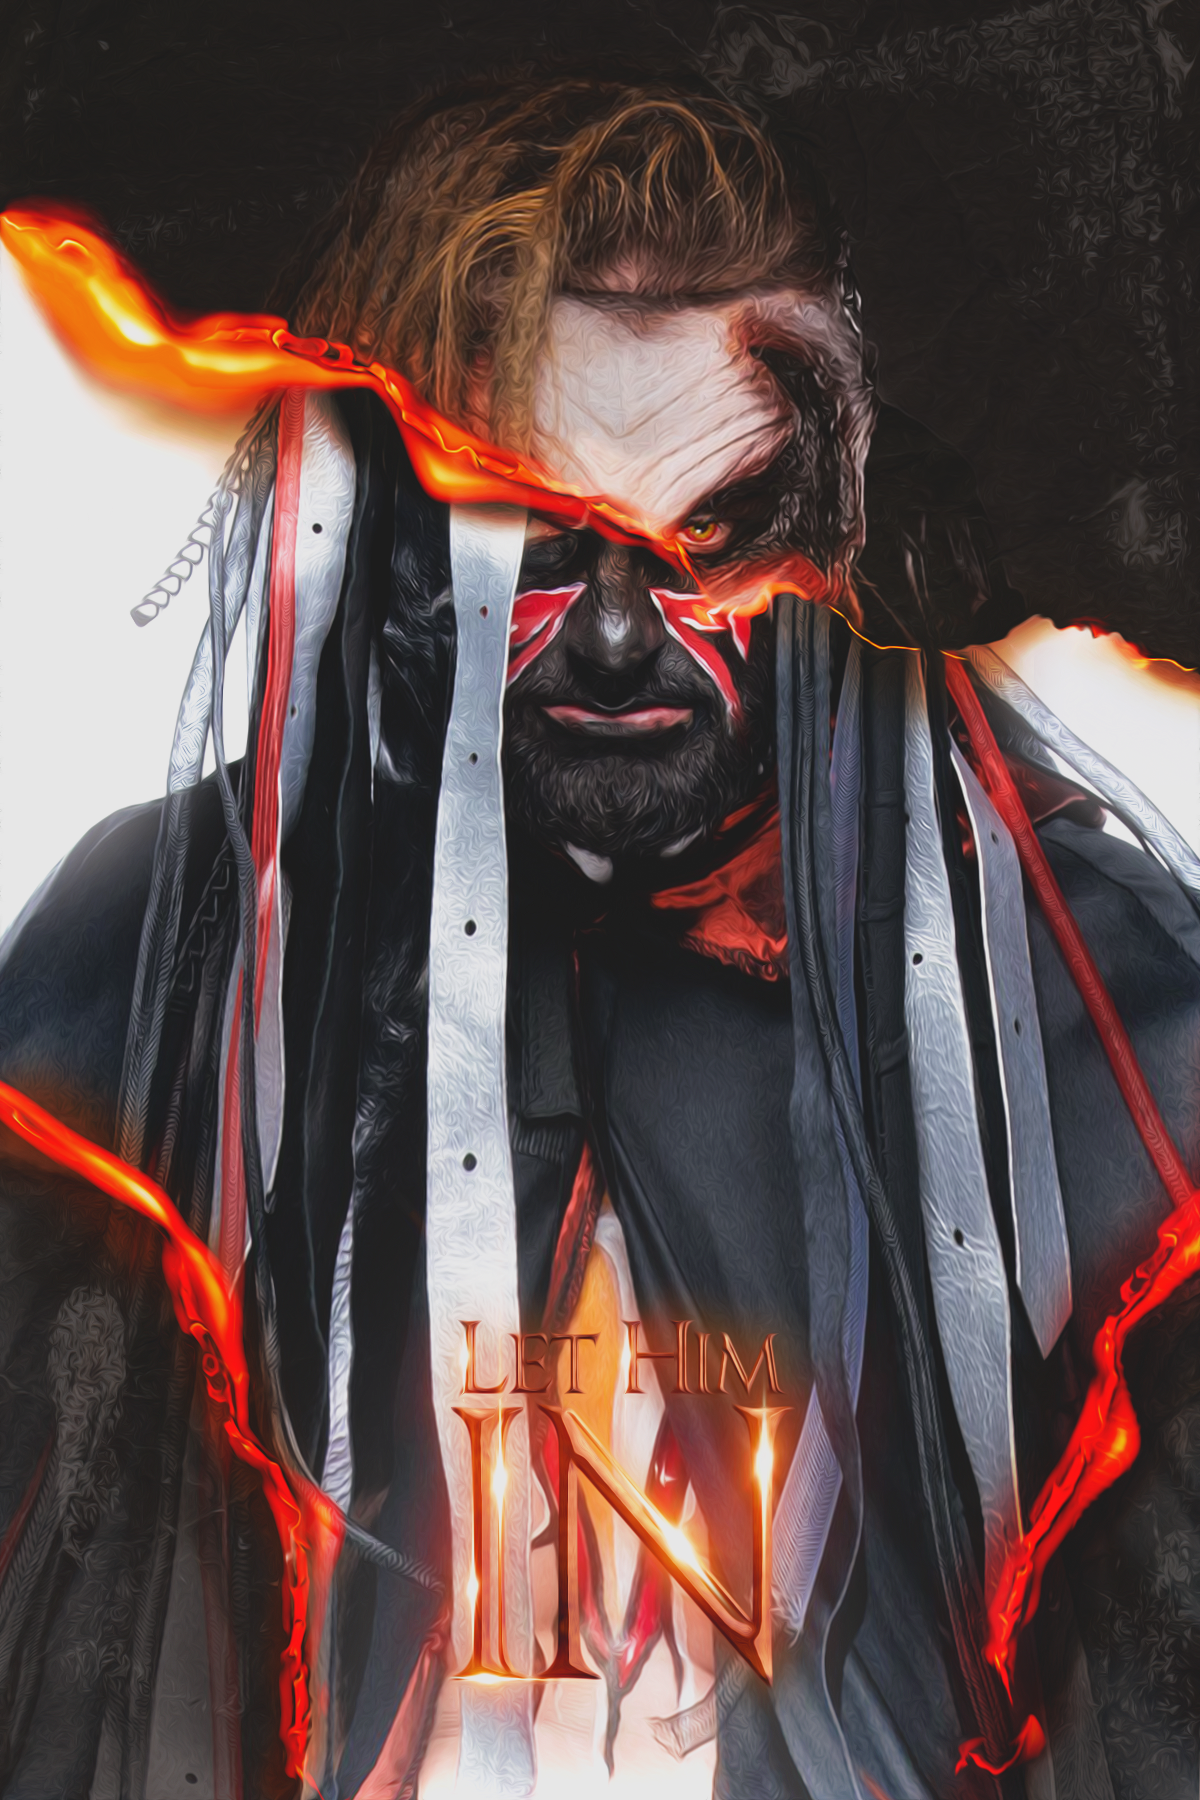 WWE Bray Wyatt  The Fiend  Wallpaper 2019 by ELITEARTISTGFX on  DeviantArt